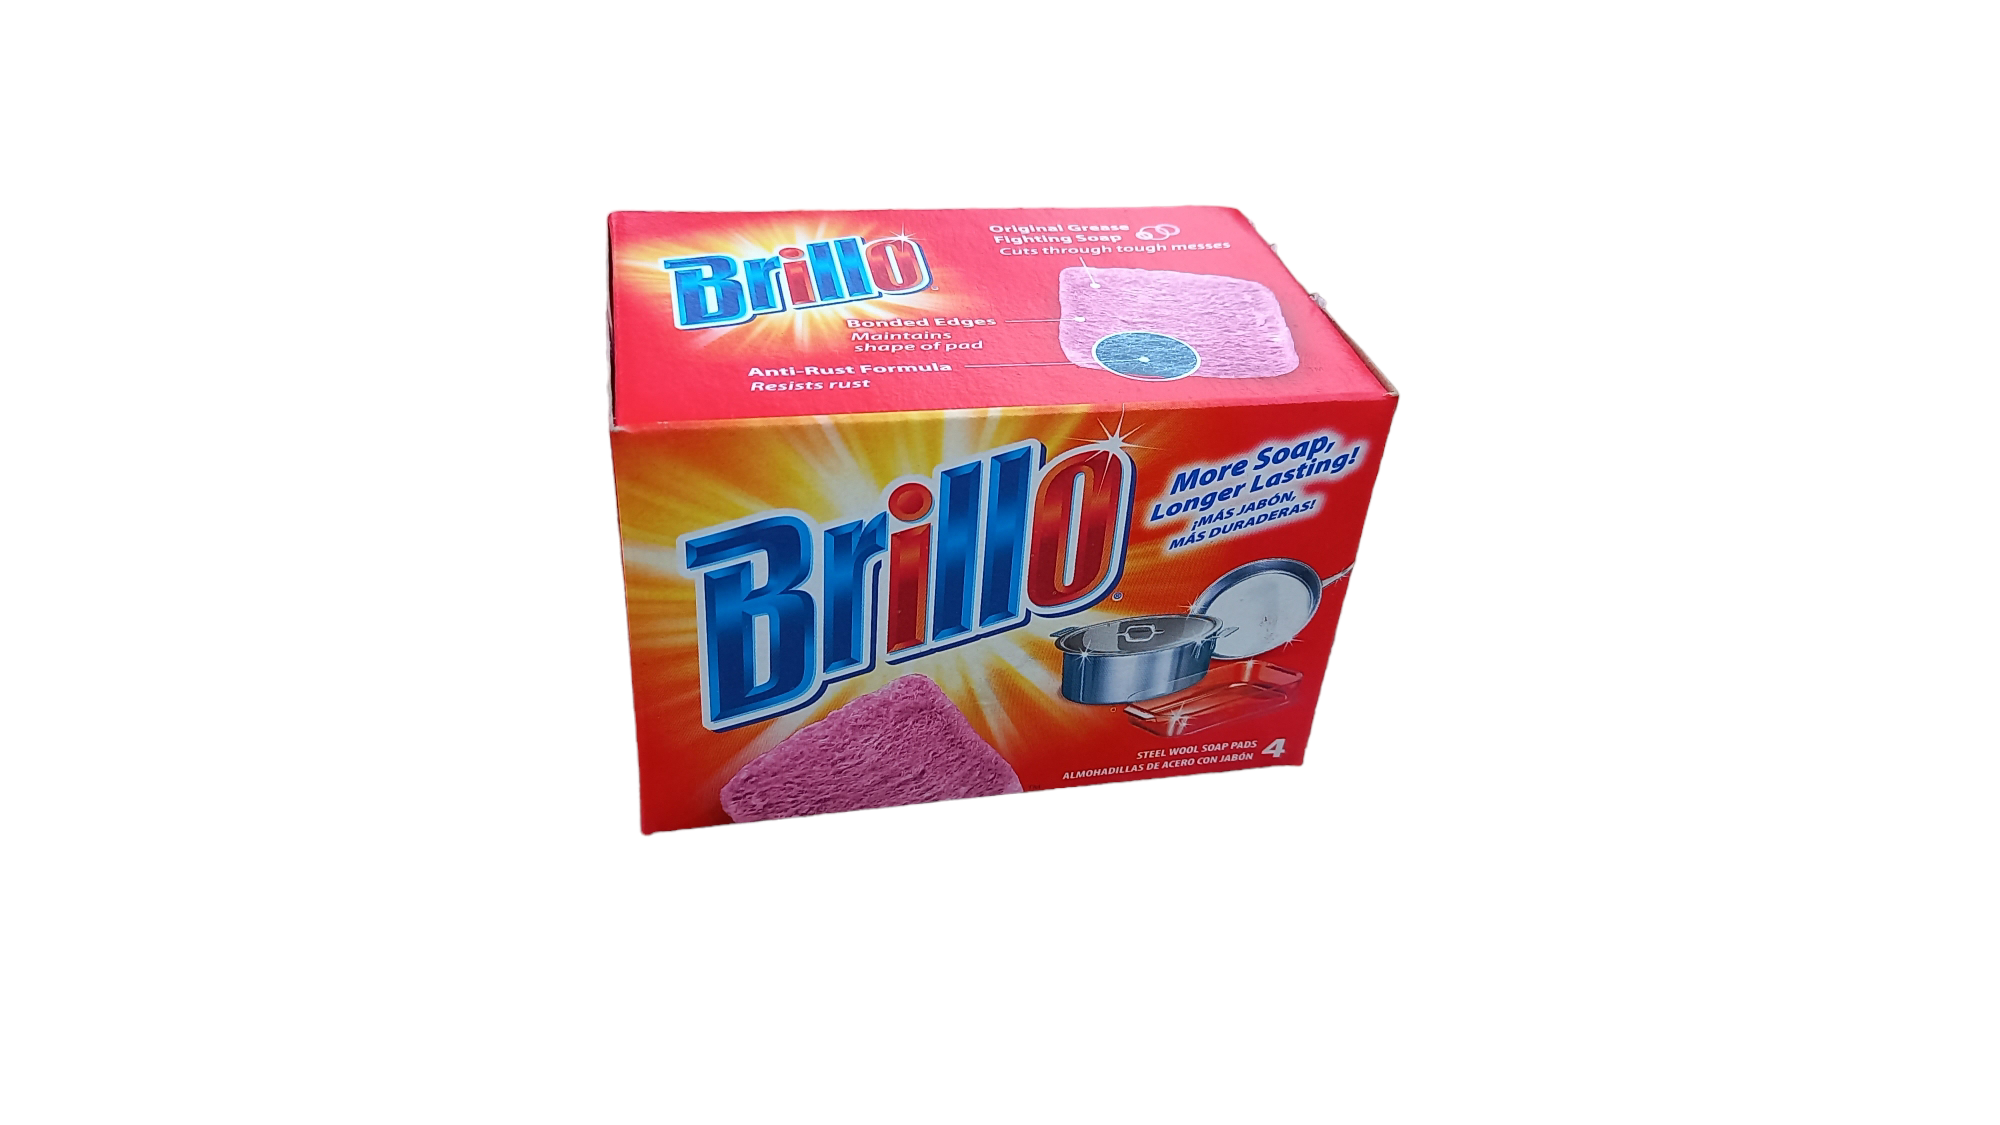 Губки для посуды Brillo, 4 шт в упаковке